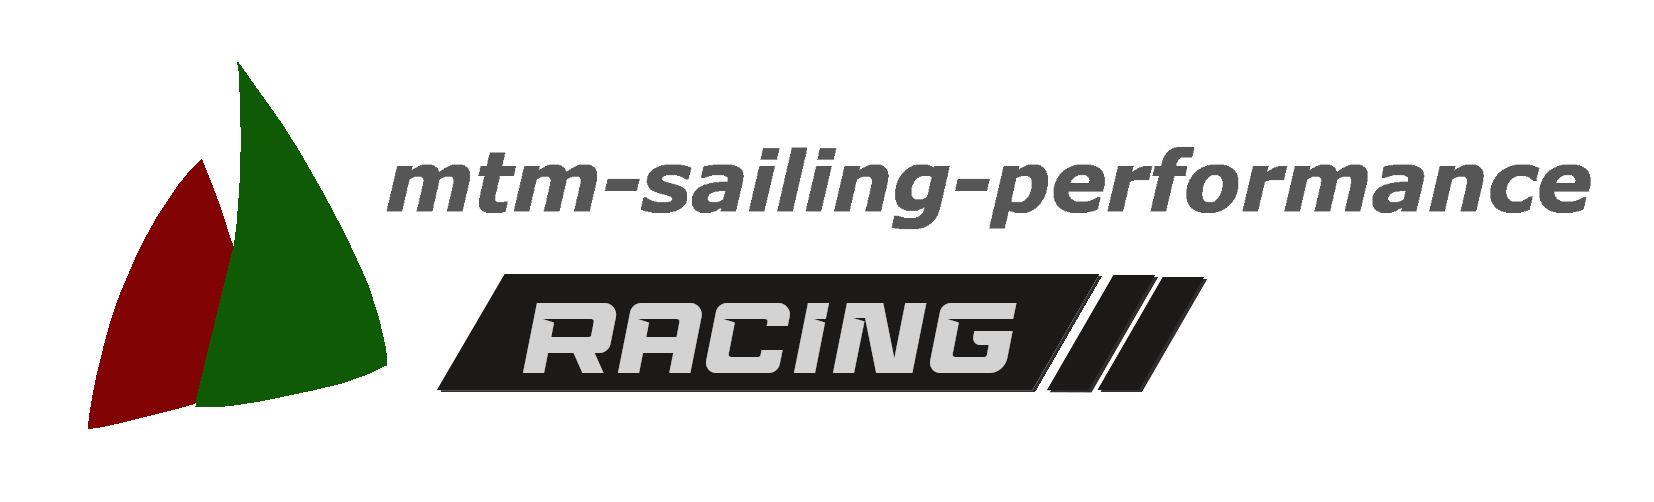 logo_quer_racing